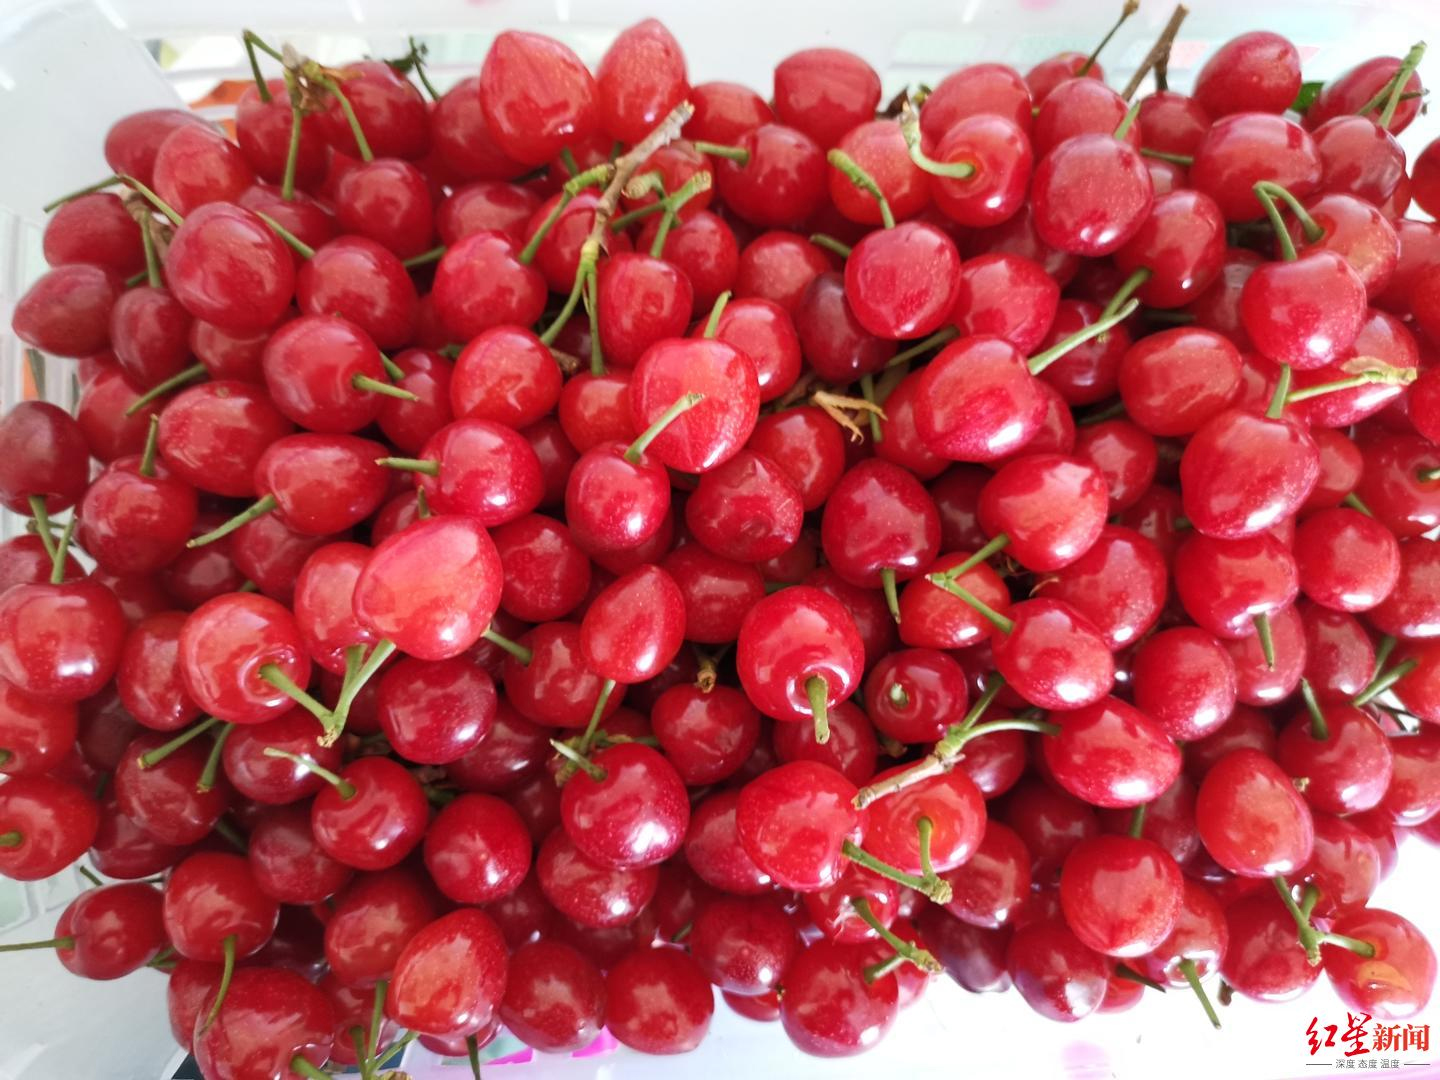 又大又甜的玛瑙红樱桃求买家！西昌“新农人”10万斤樱桃遭遇销售难